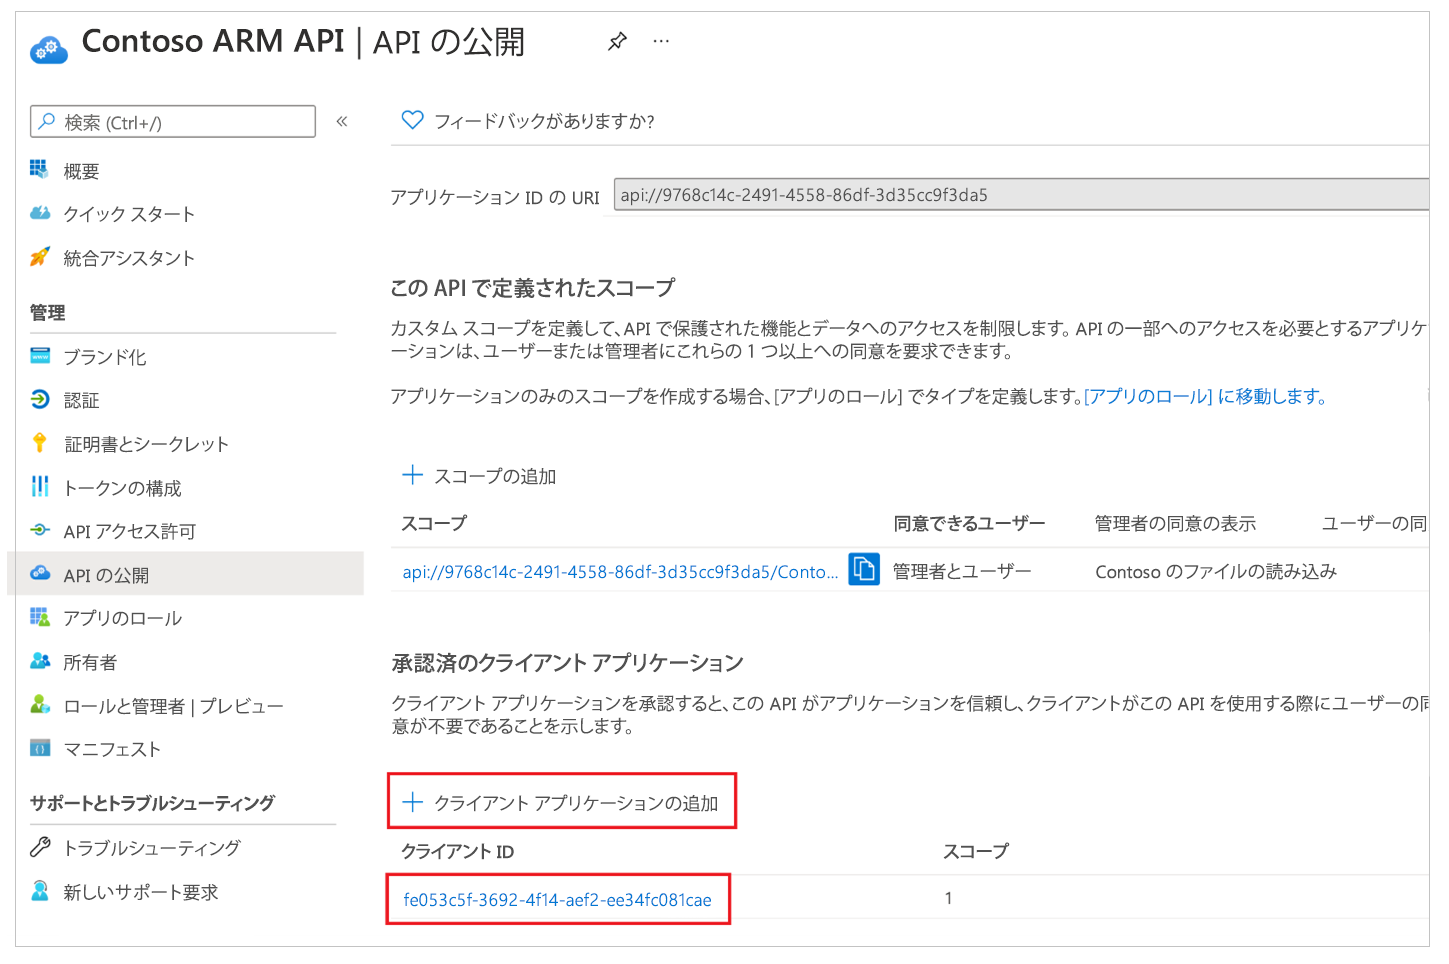 カスタム API 1 への Azure API 接続を事前承認する